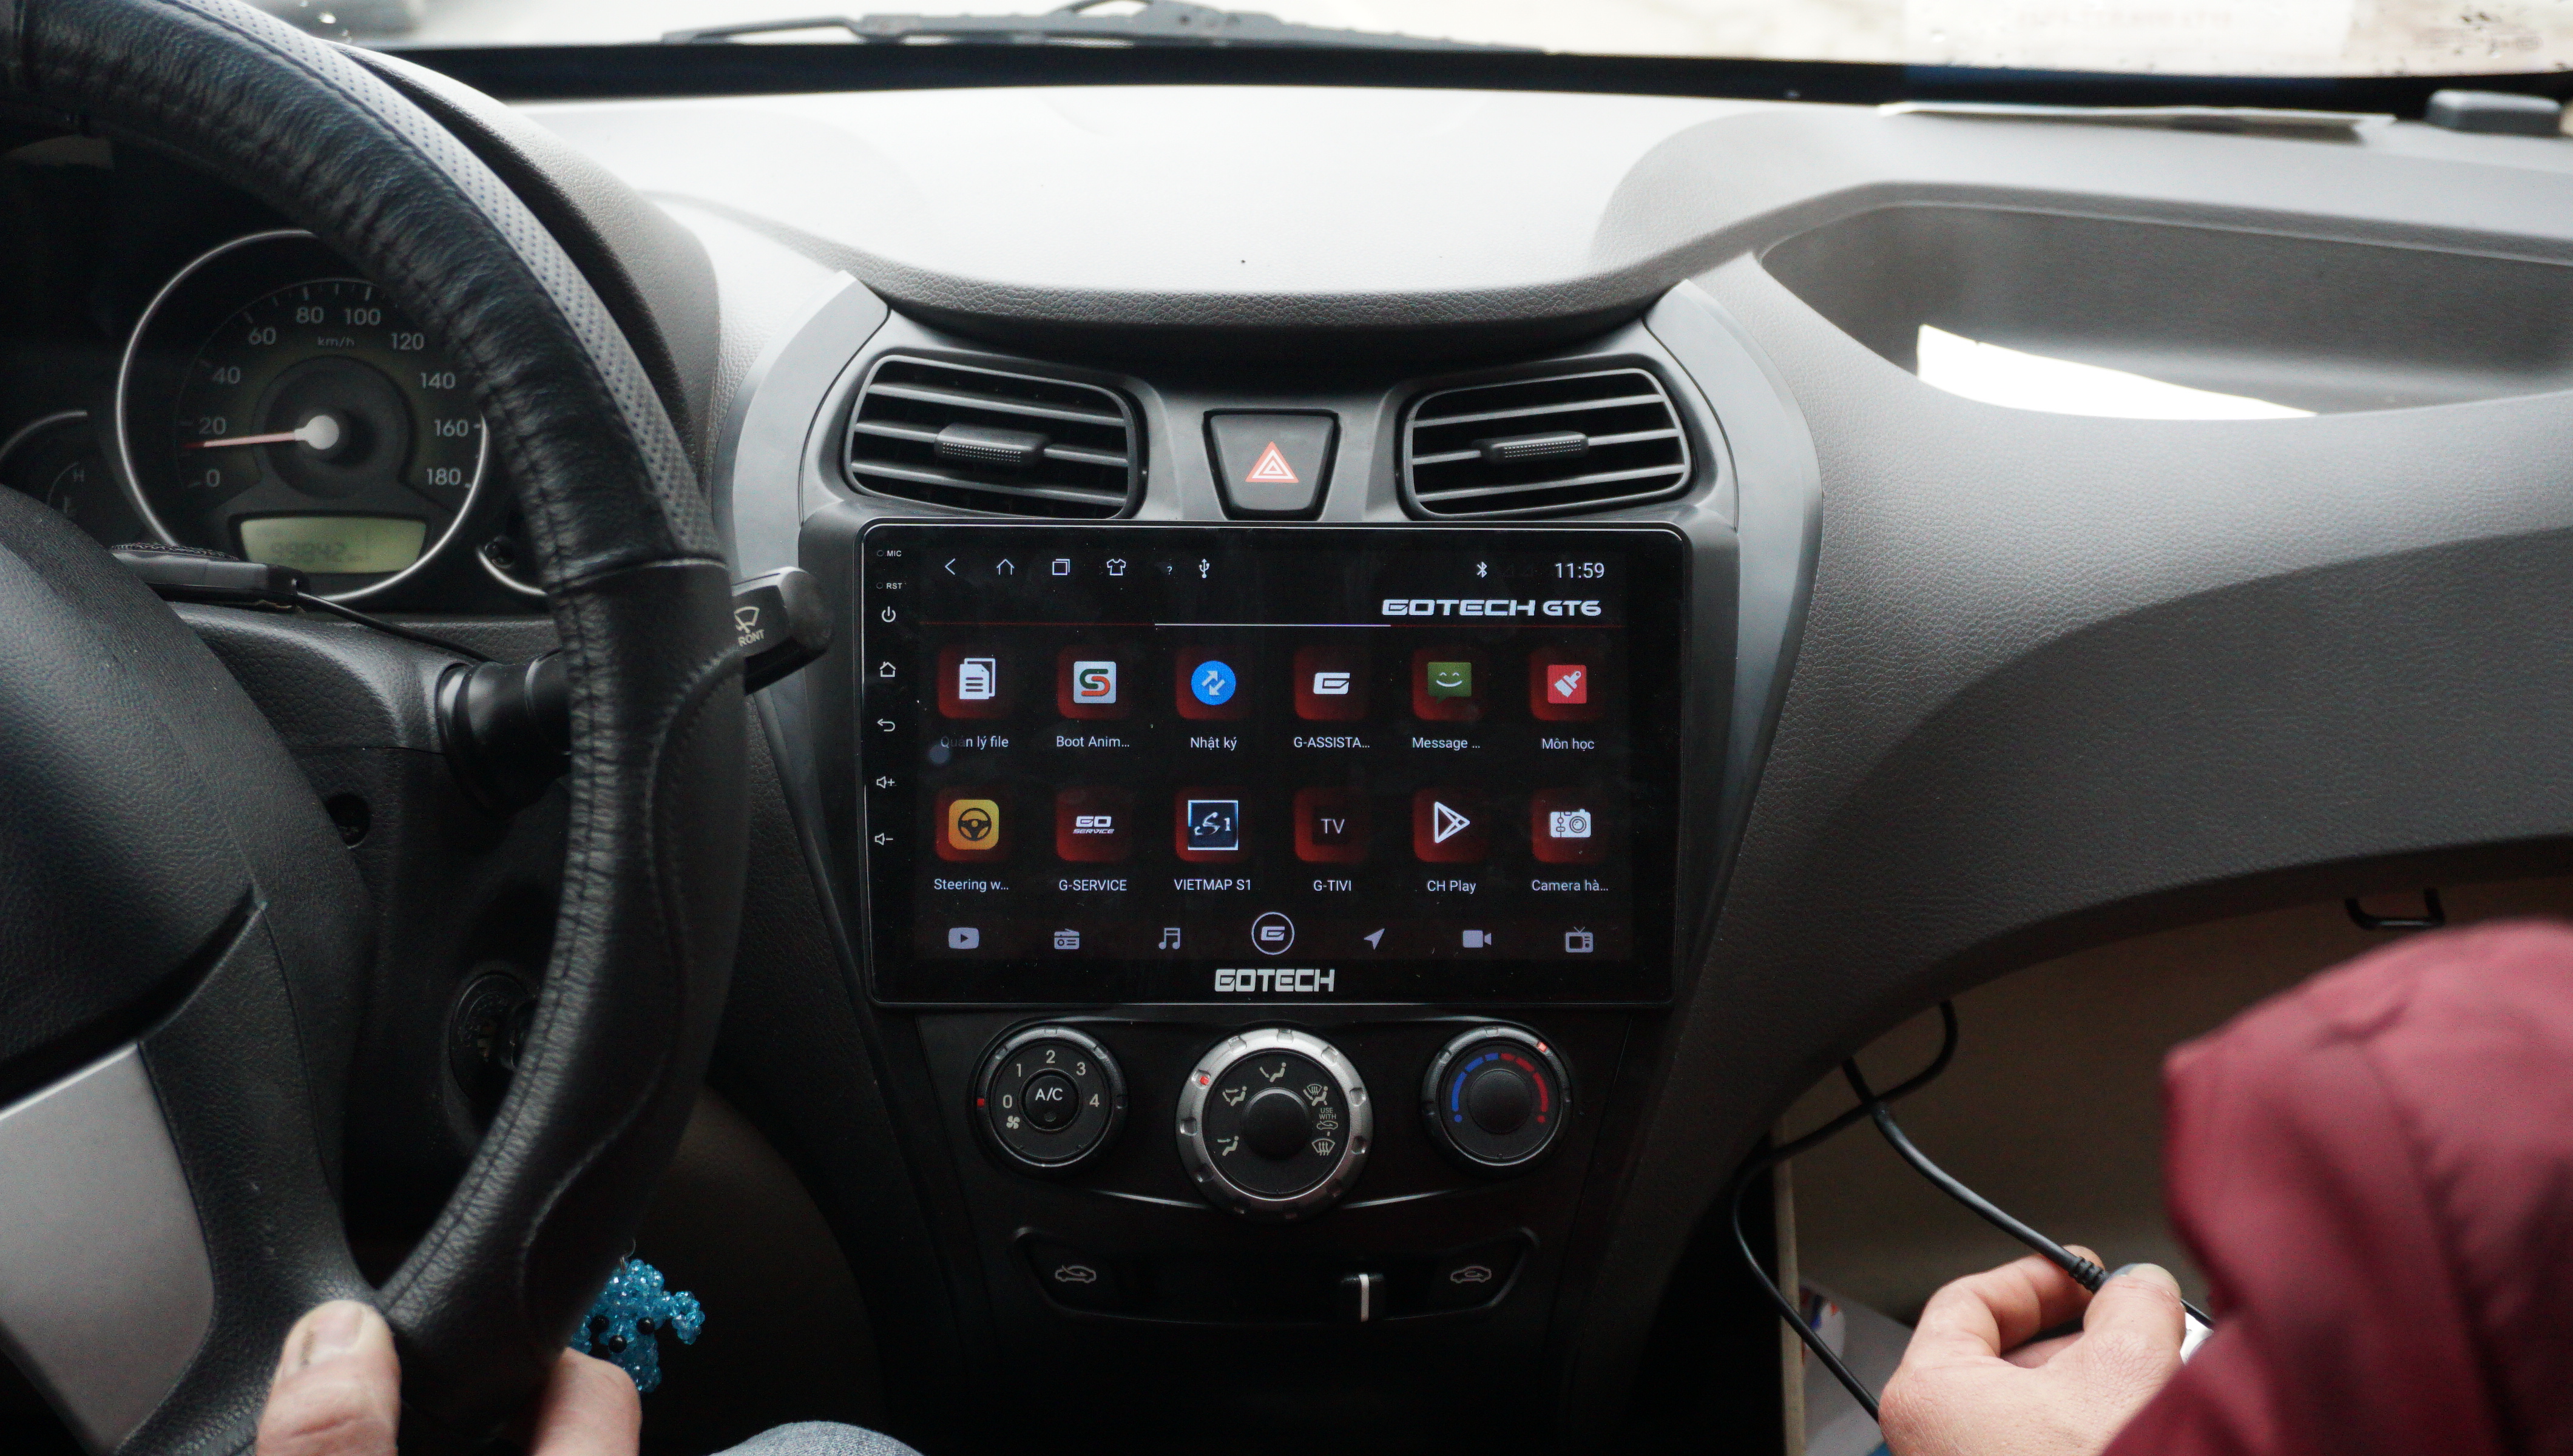 Điều khiển bằng giọng nói trên màn hình Gotech GT6 New Hyundai Eon 2011 - 2019